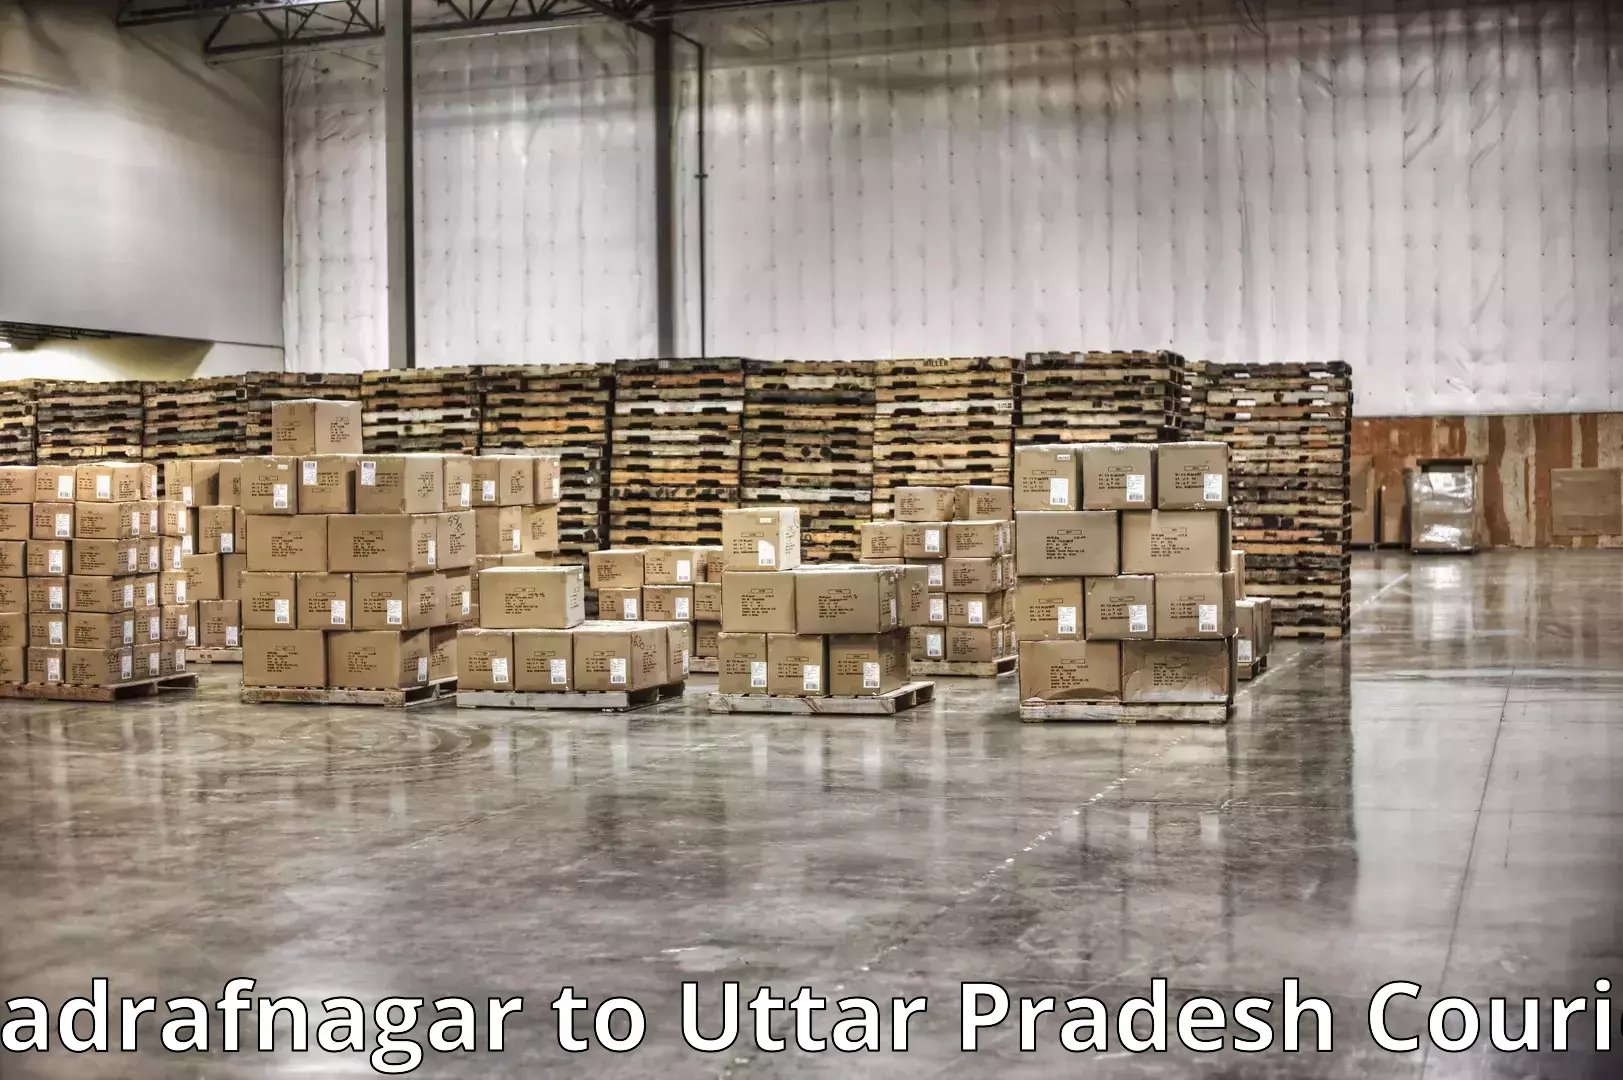 Furniture delivery service Wadrafnagar to Bansdih